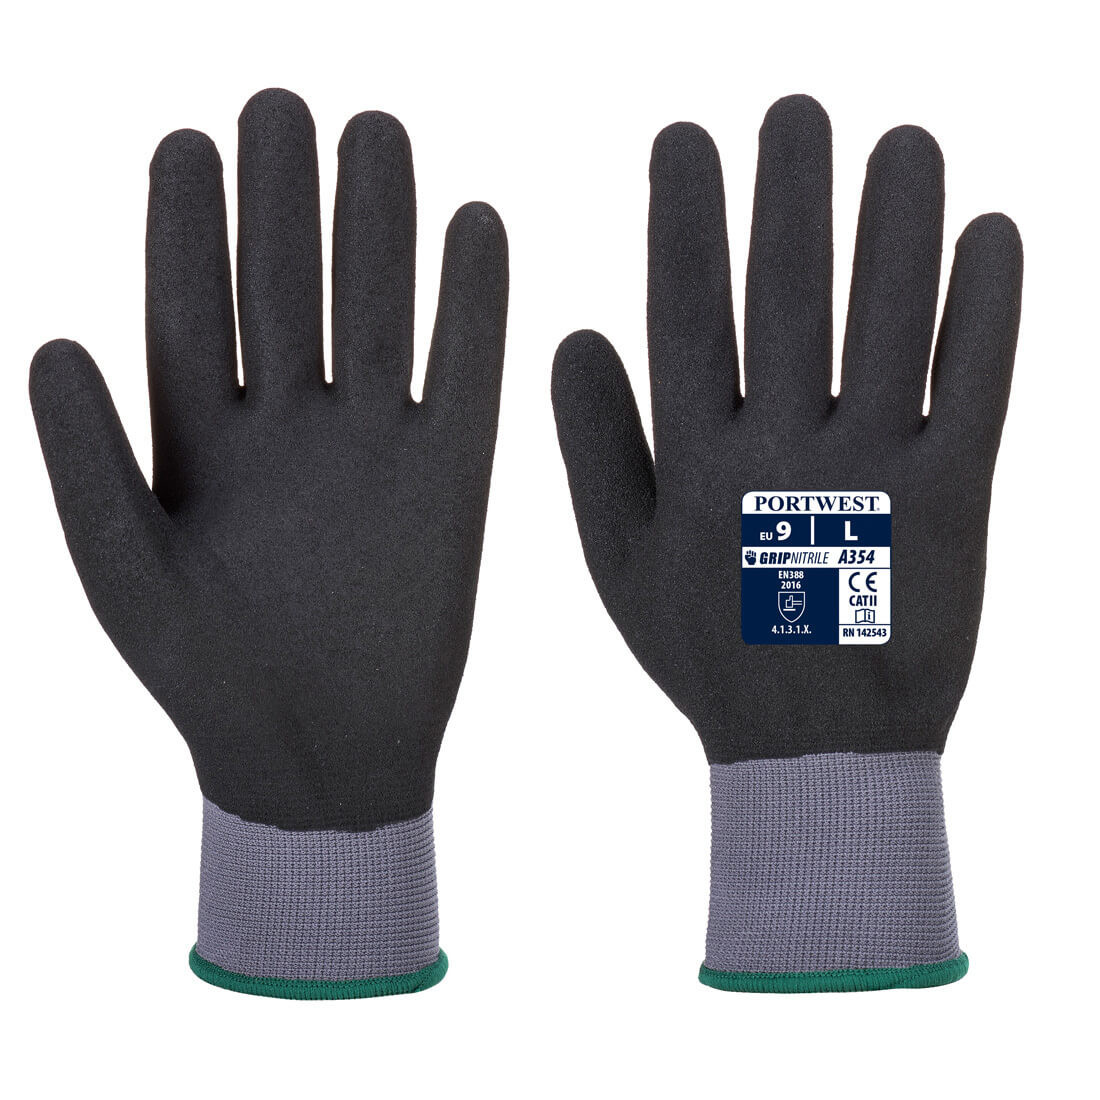 DermiFlex Ultra Pro Glove - PU/Nitrile Foam - Personal protection